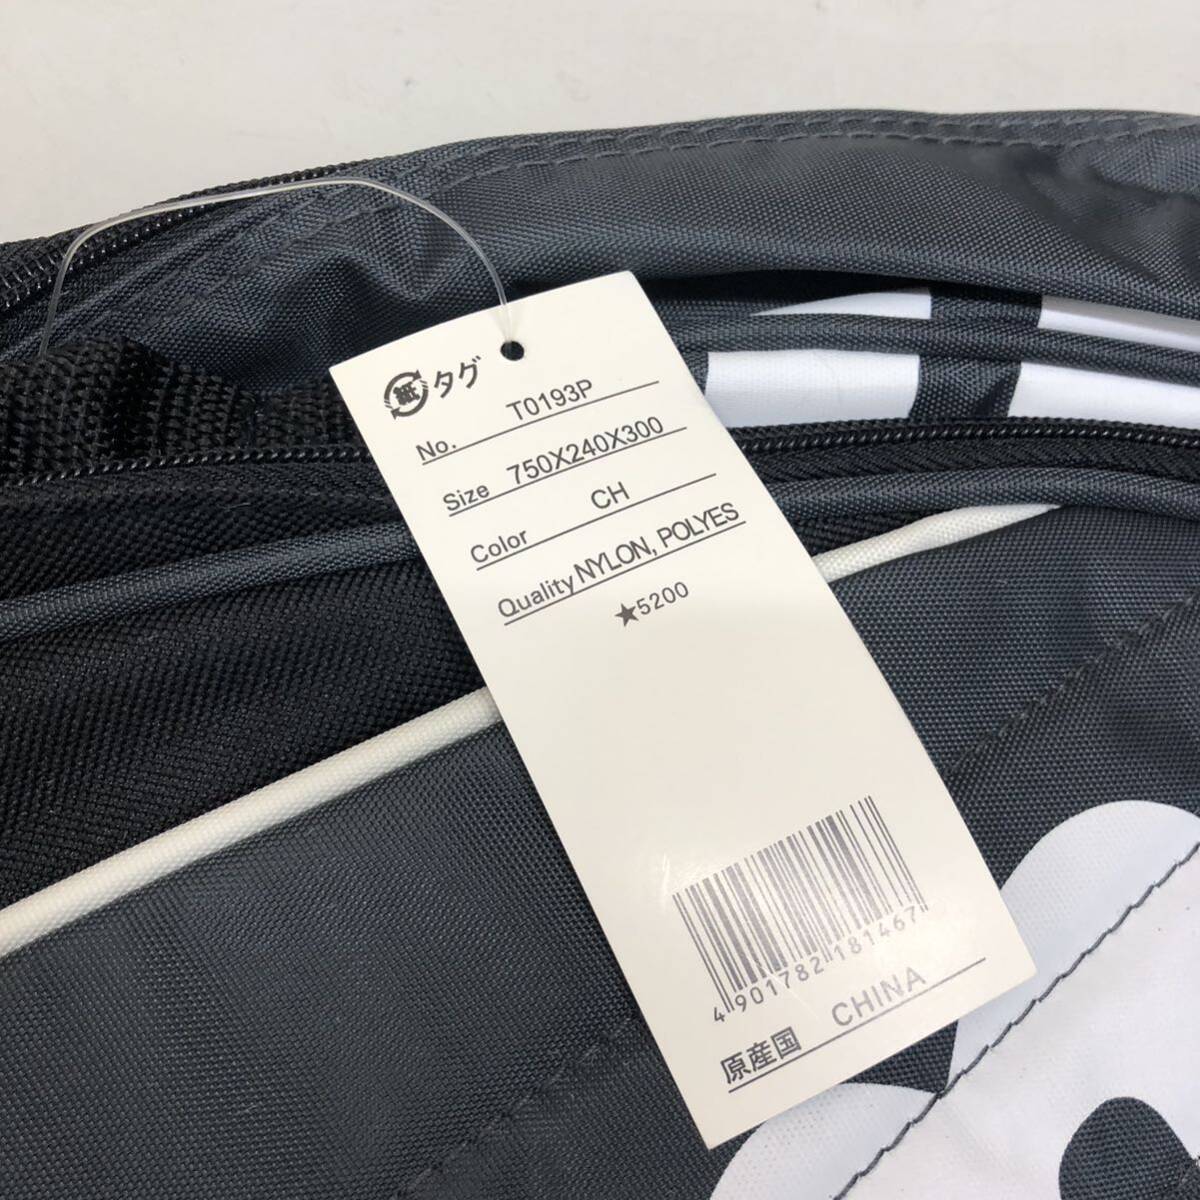 14 Wilson racket bag black used unused long-term keeping goods tennis tennis bag racket 